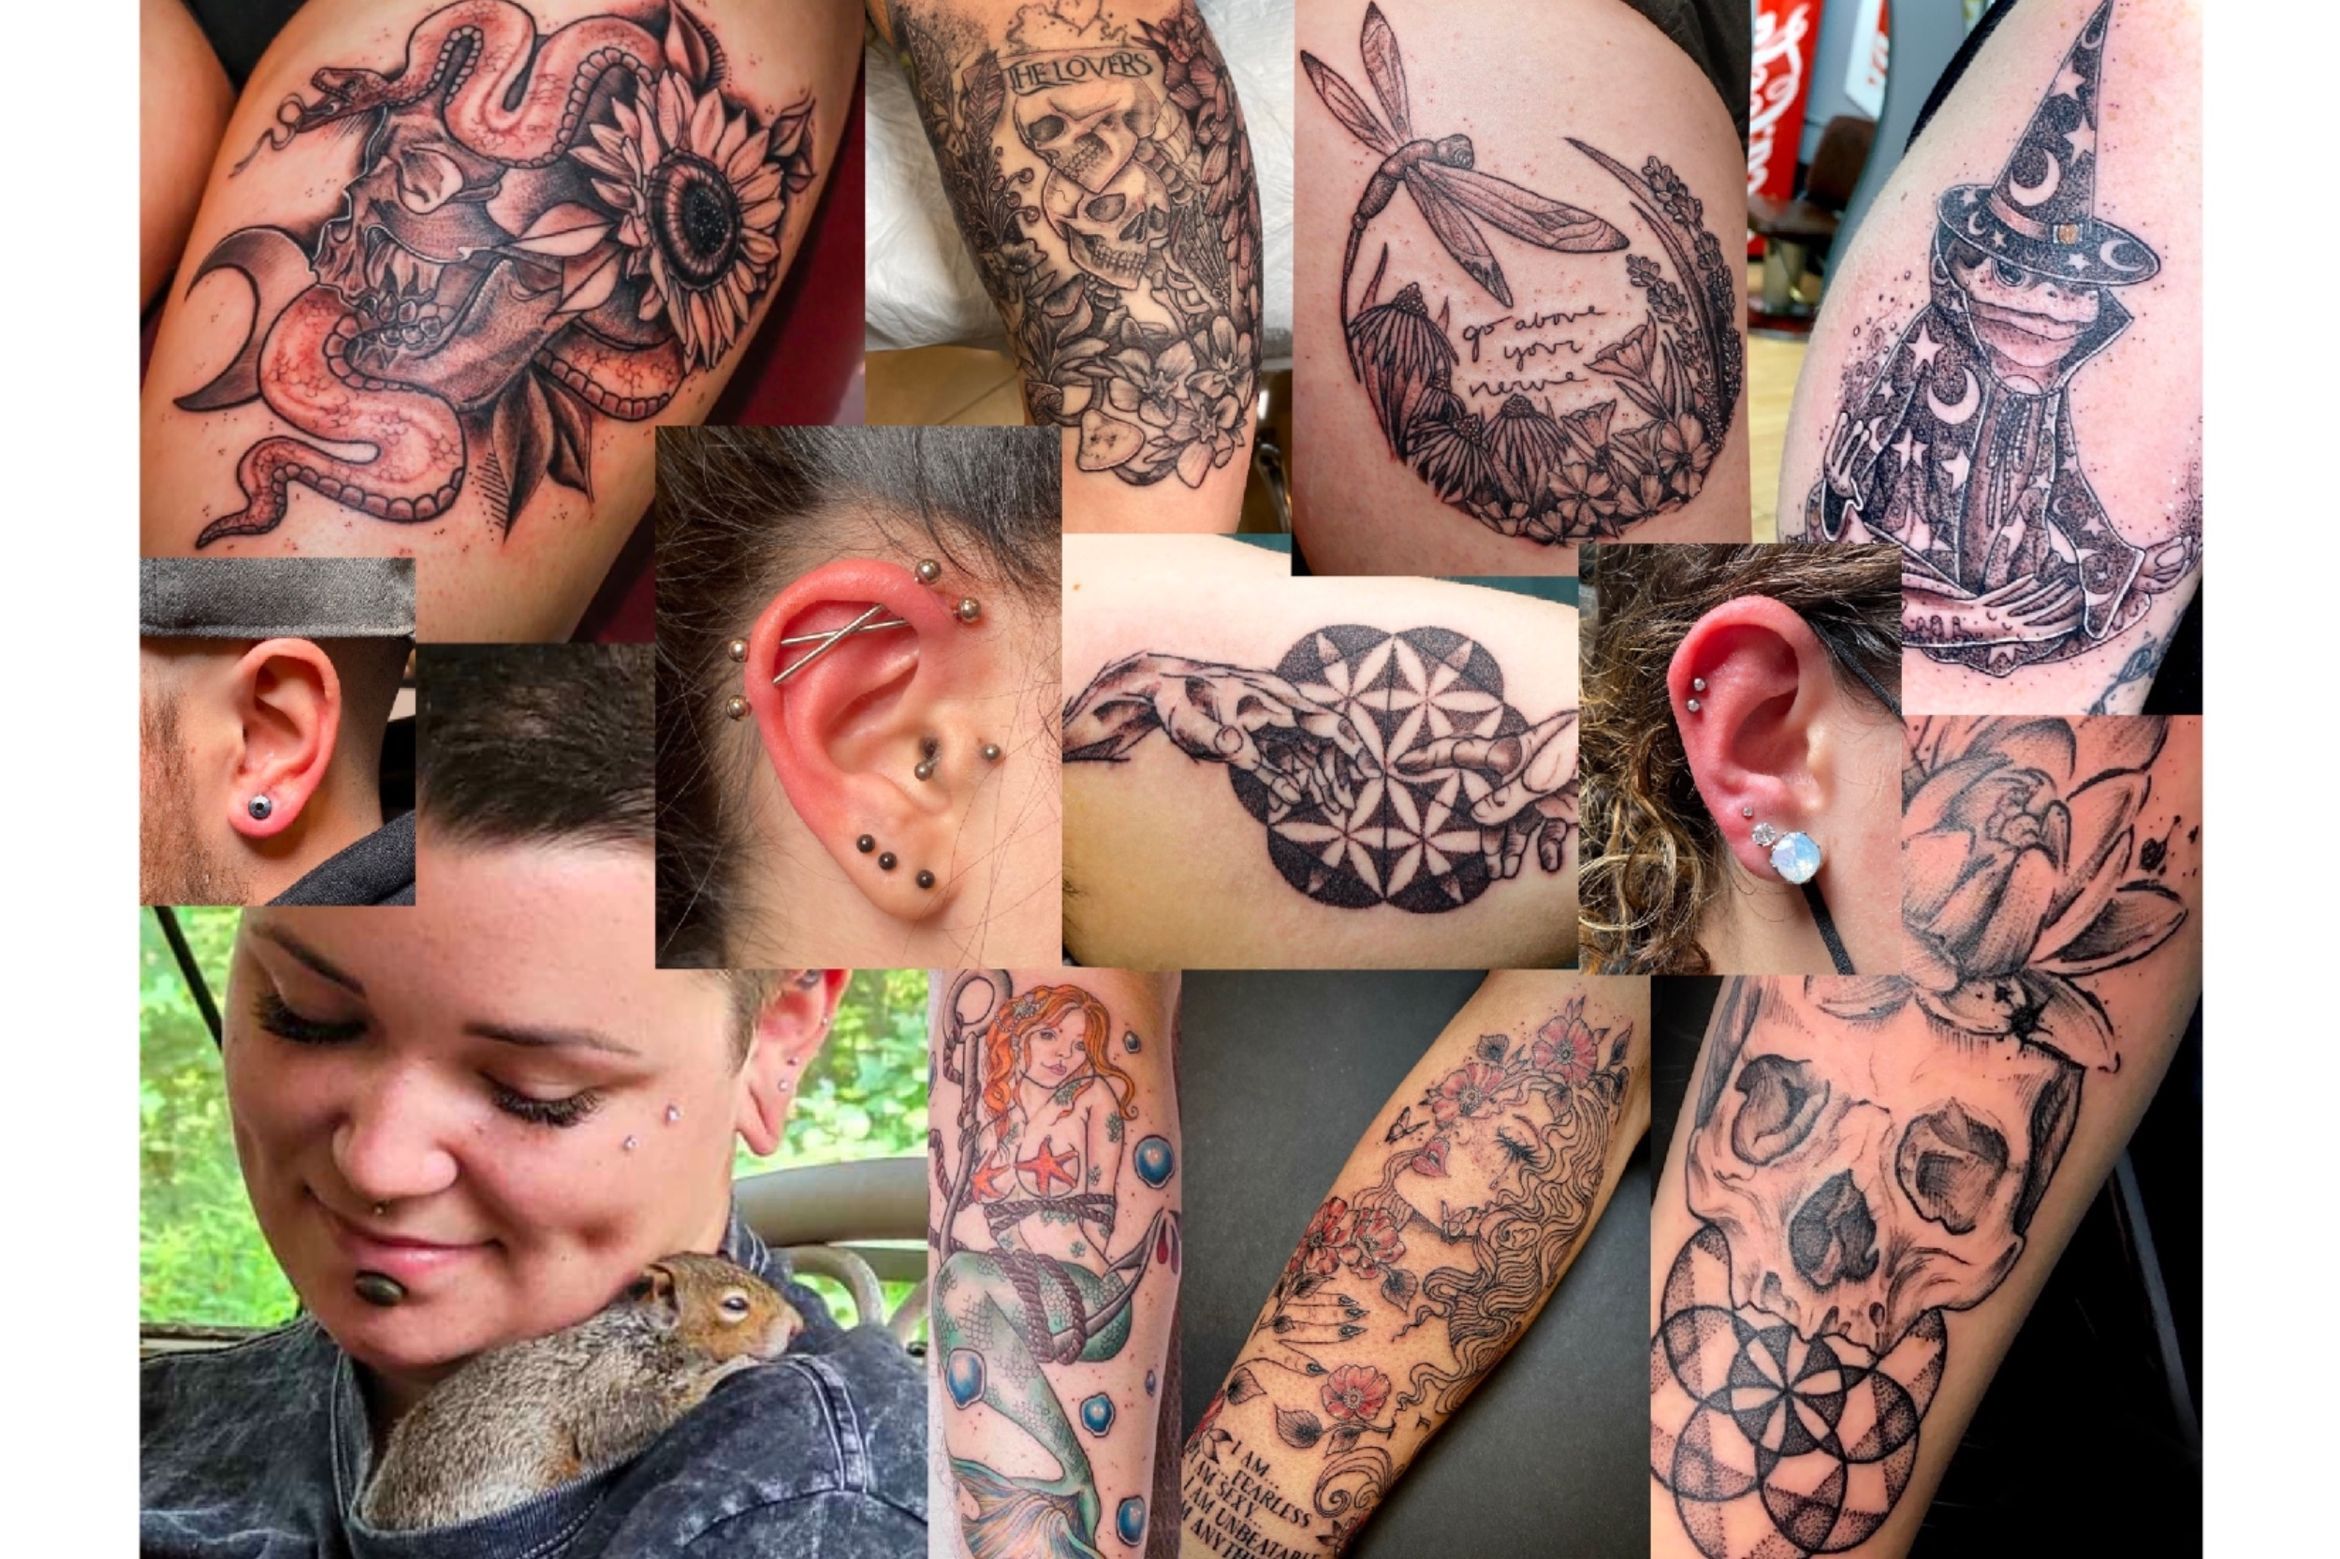 Professional Tattoo Artists  Danville IL  No Regrets Tattoos  Body  Piercing